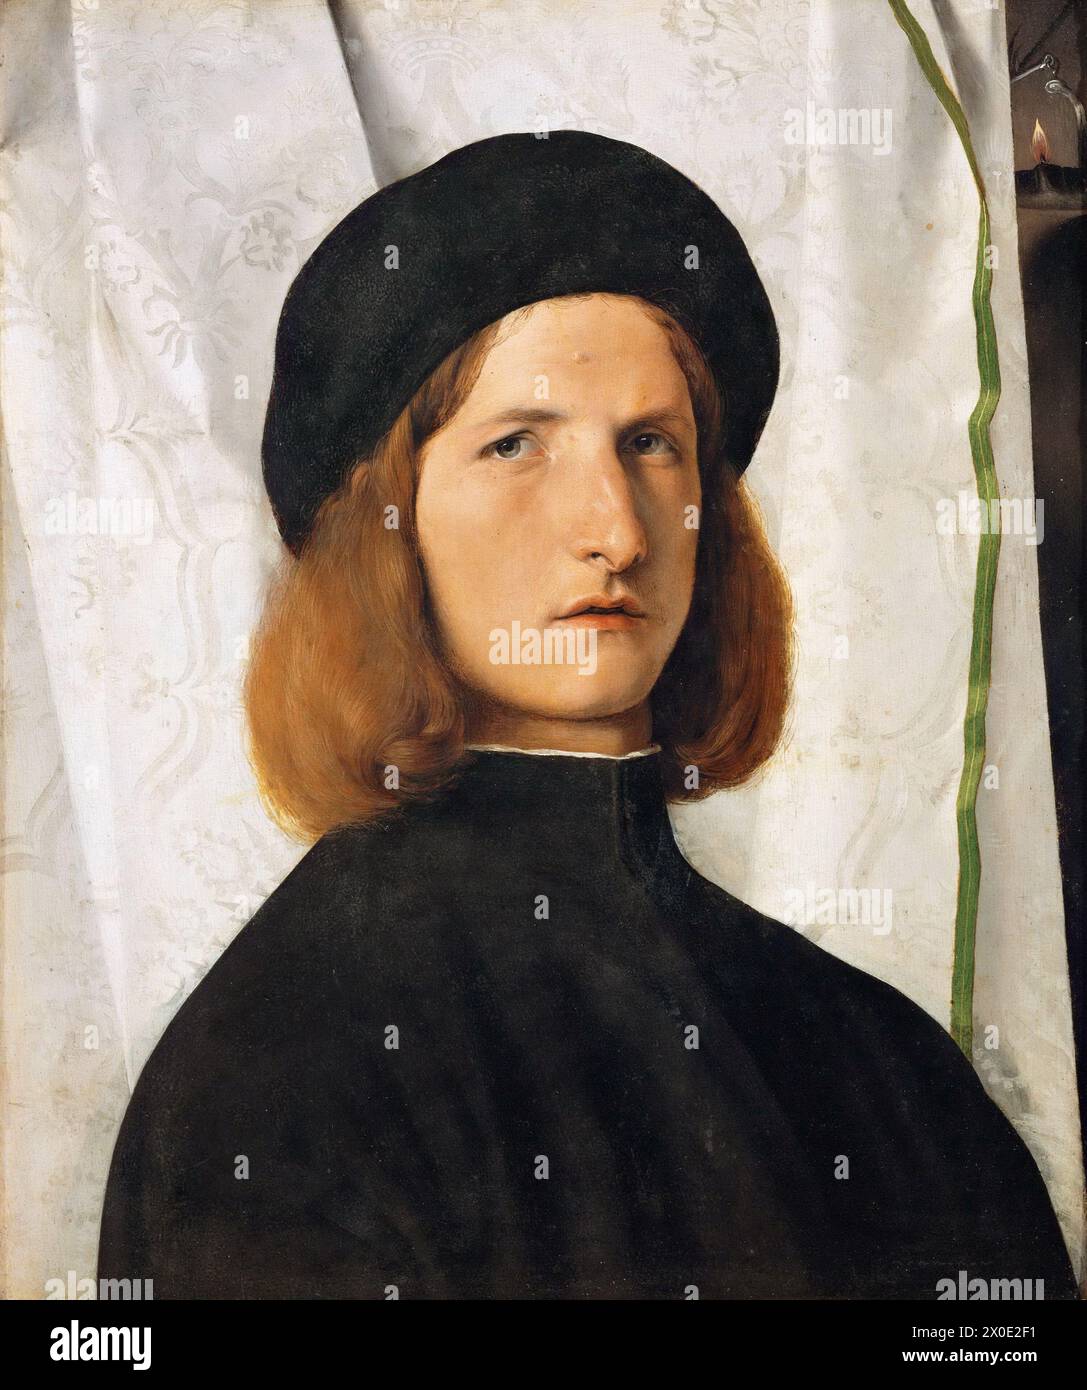 Il Ritratto di un giovane con lampada è un dipinto ad olio su tela del pittore rinascimentale Lorenzo lotto, risalente al 1506 circa. Foto Stock